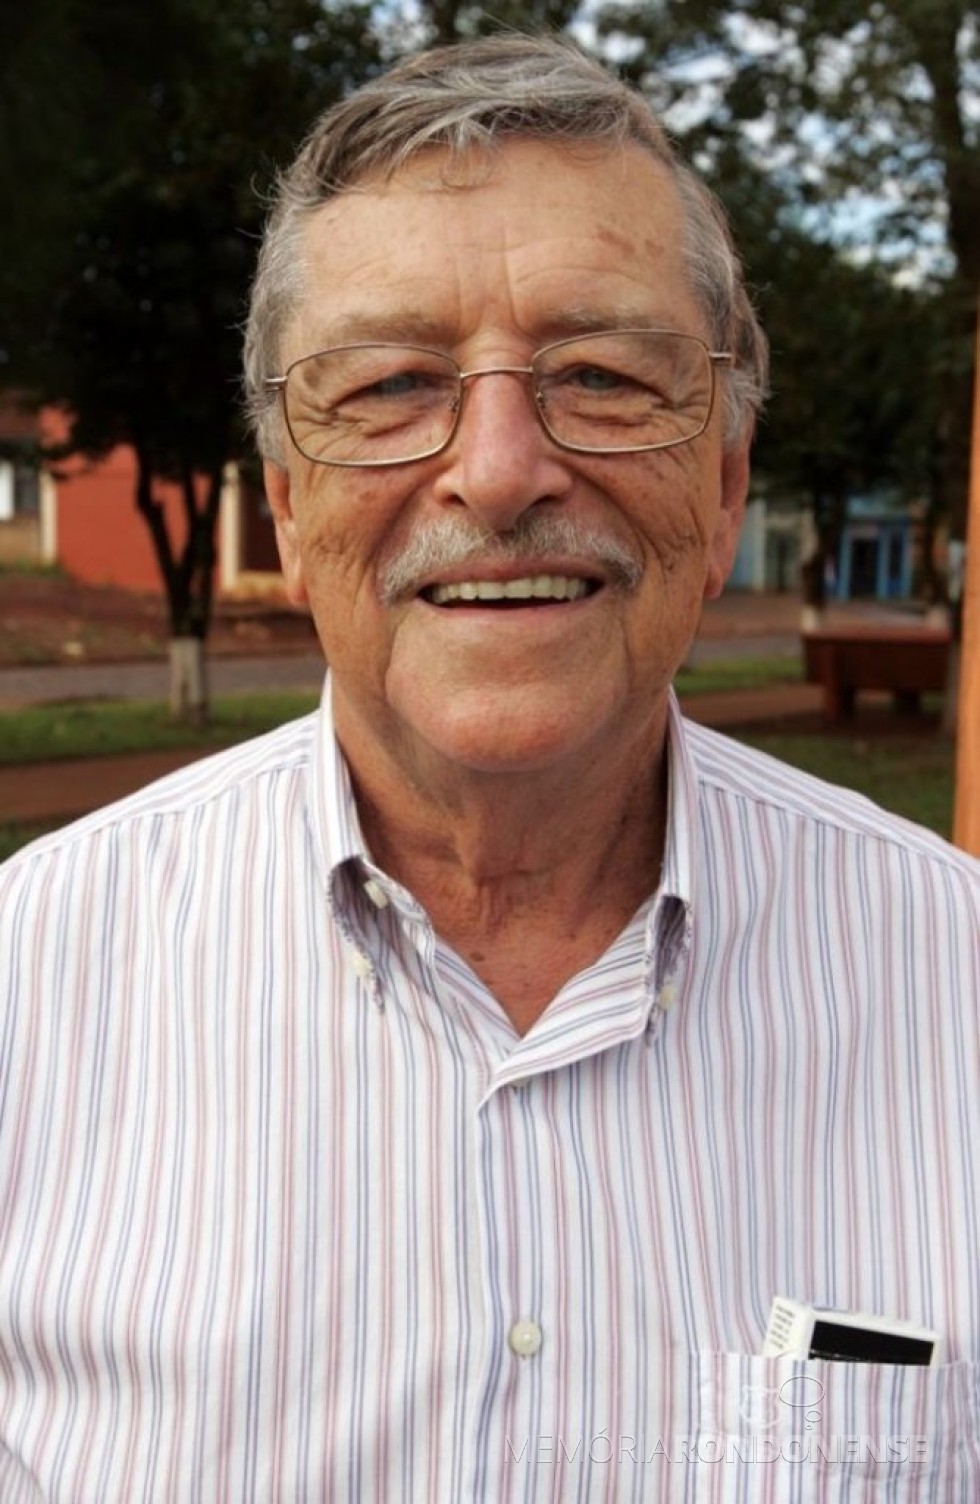 || Willy Lüdke, primeiro gerente da Cooperativa Agrícola Mista Rondon Ltda., agora Cooperativa Agroindustrial Copagril, contratato em setembro de 1970.
Imagem: Acervo Gazeta do Povo - FOTO 1 - 

